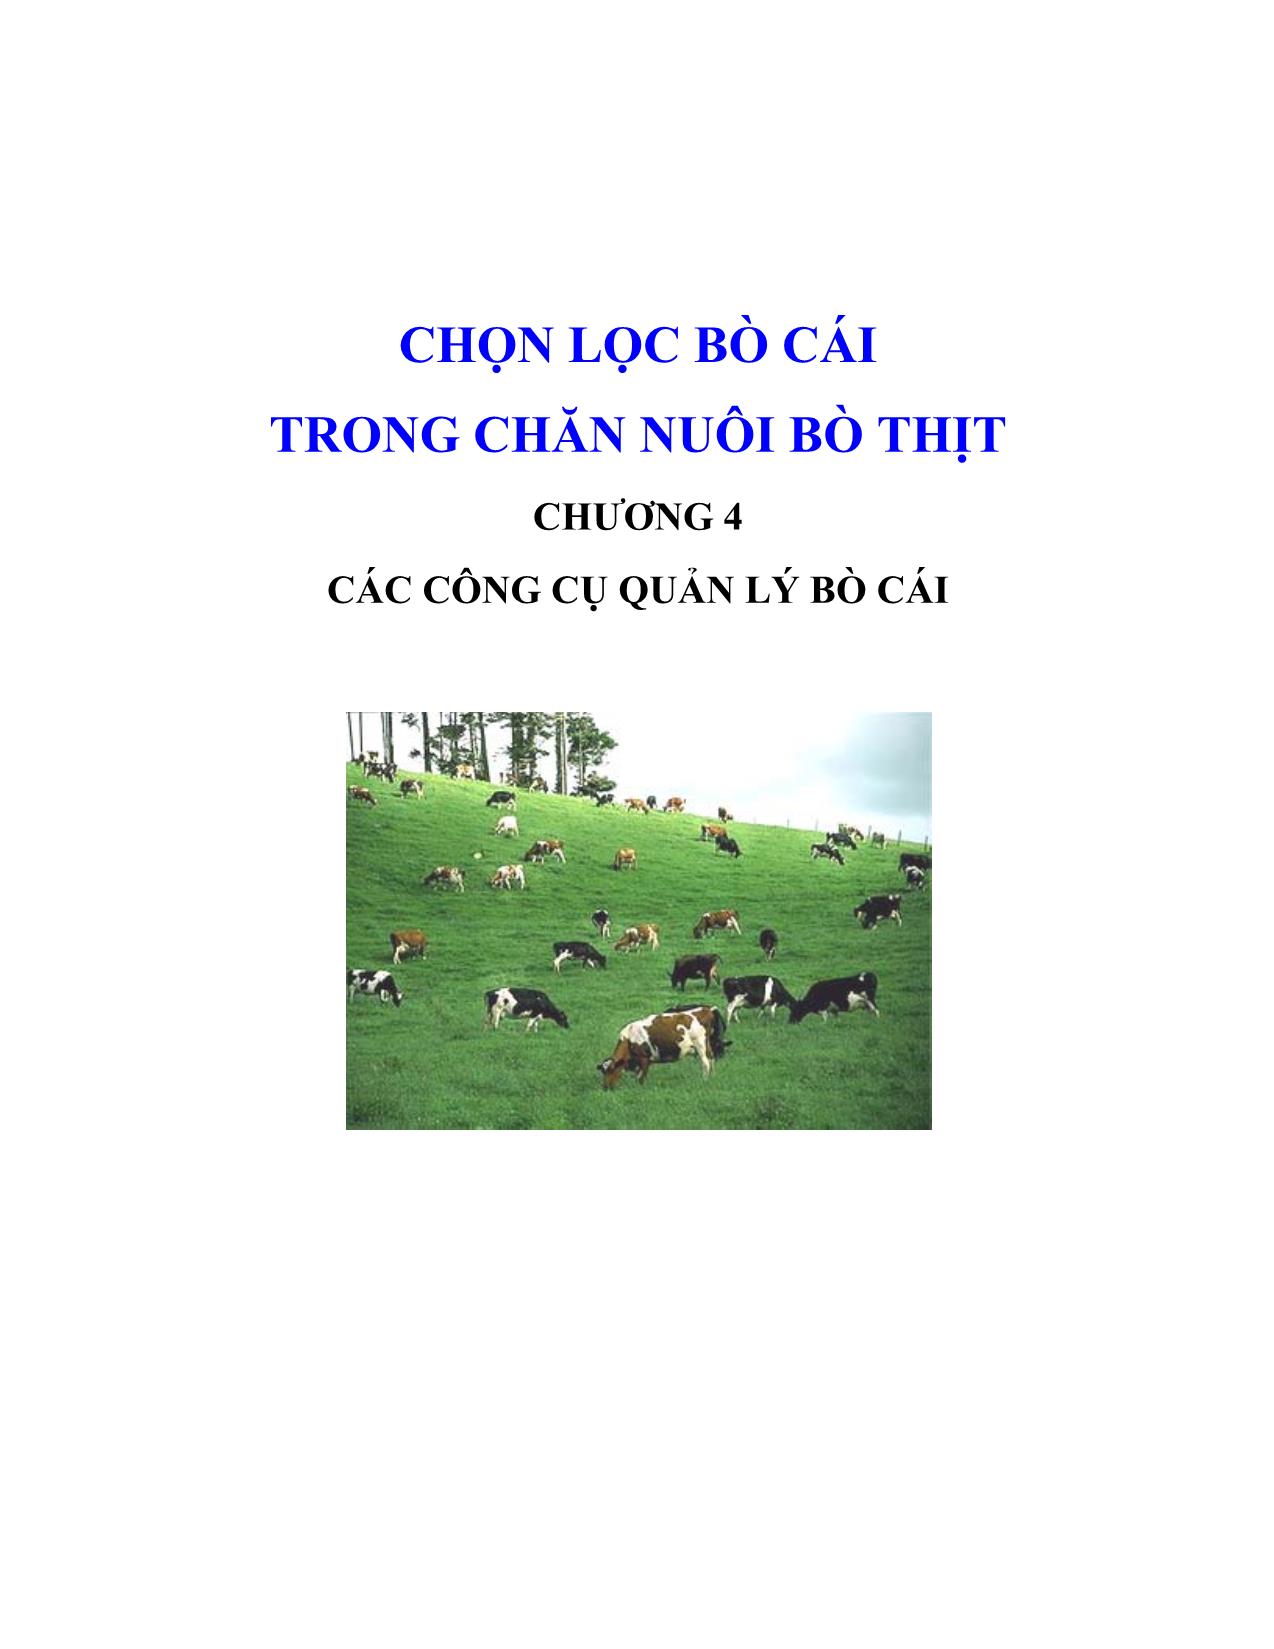 Giáo trình Chọn lọc bò cái trong chăn nuôi bò thịt - Chương 4: Các công cụ quản lý bò cái trang 1